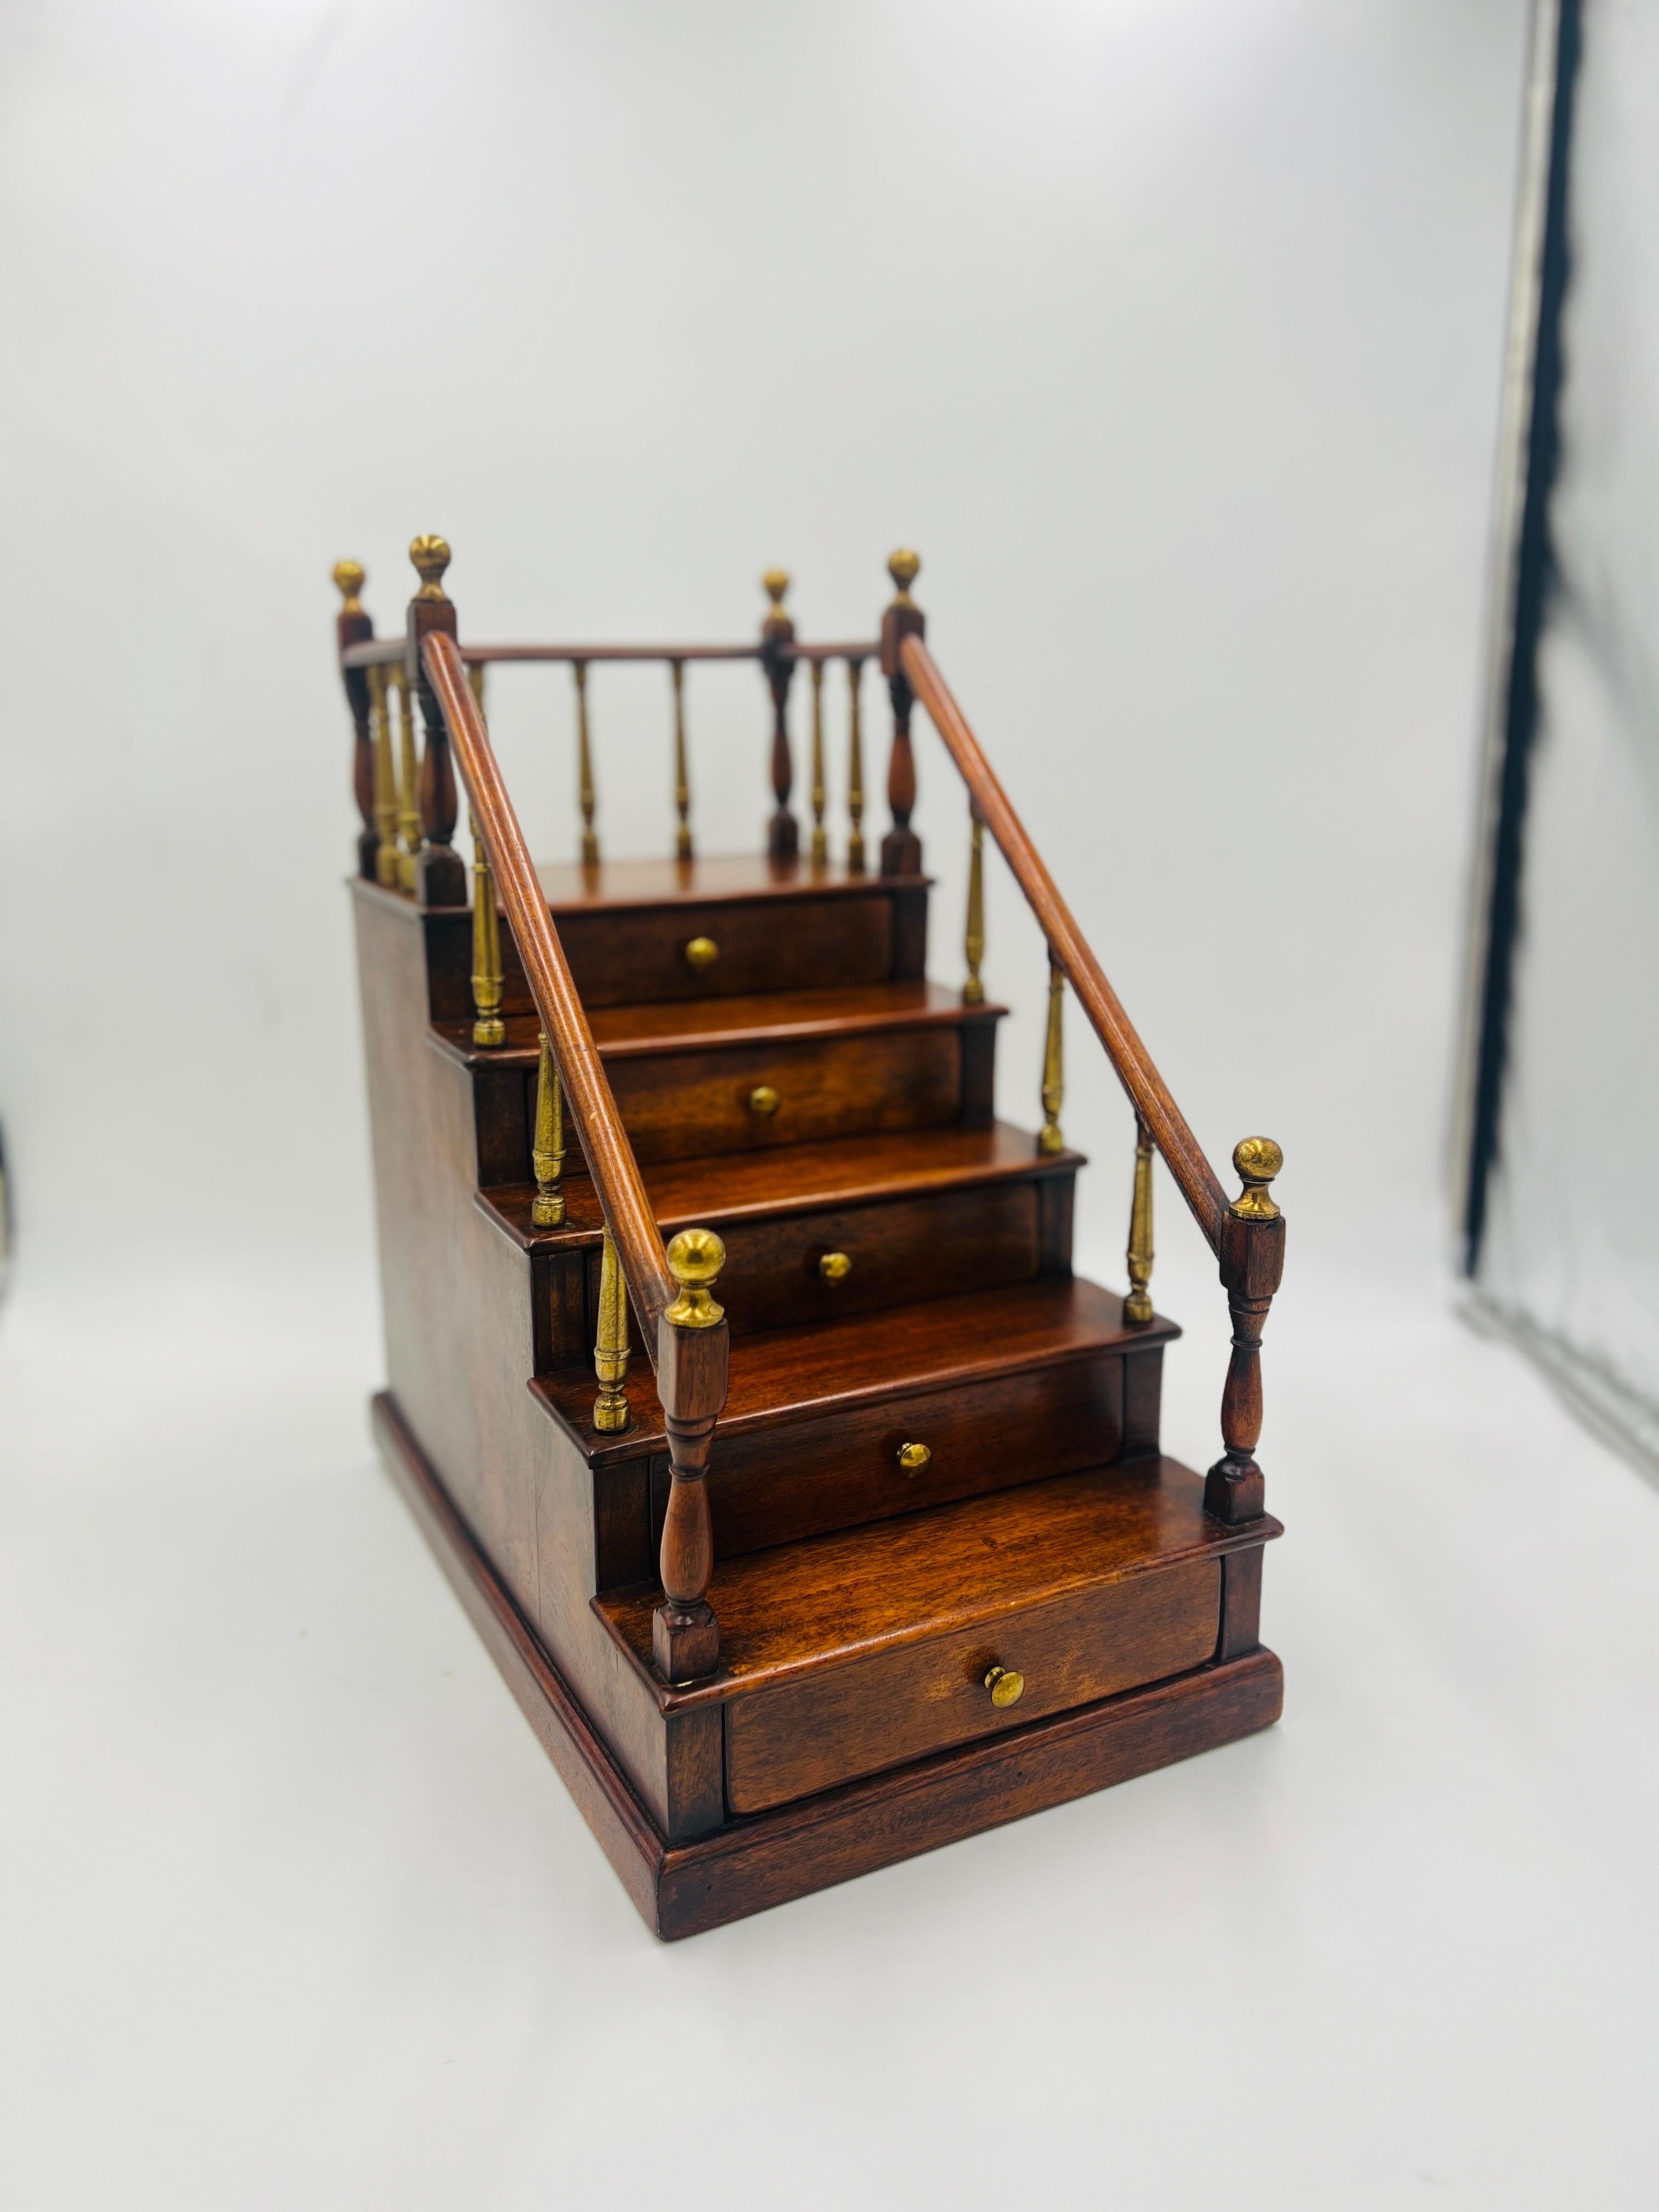 Modèle ancien de cage d'escalier en acajou, fabriqué par un cabinet anglais. Le modèle présente un design à 5 marches avec des garde-corps sur les côtés. Chaque garde-corps est rehaussé d'un fleuron en laiton. Les 5 tiroirs coulissent facilement et